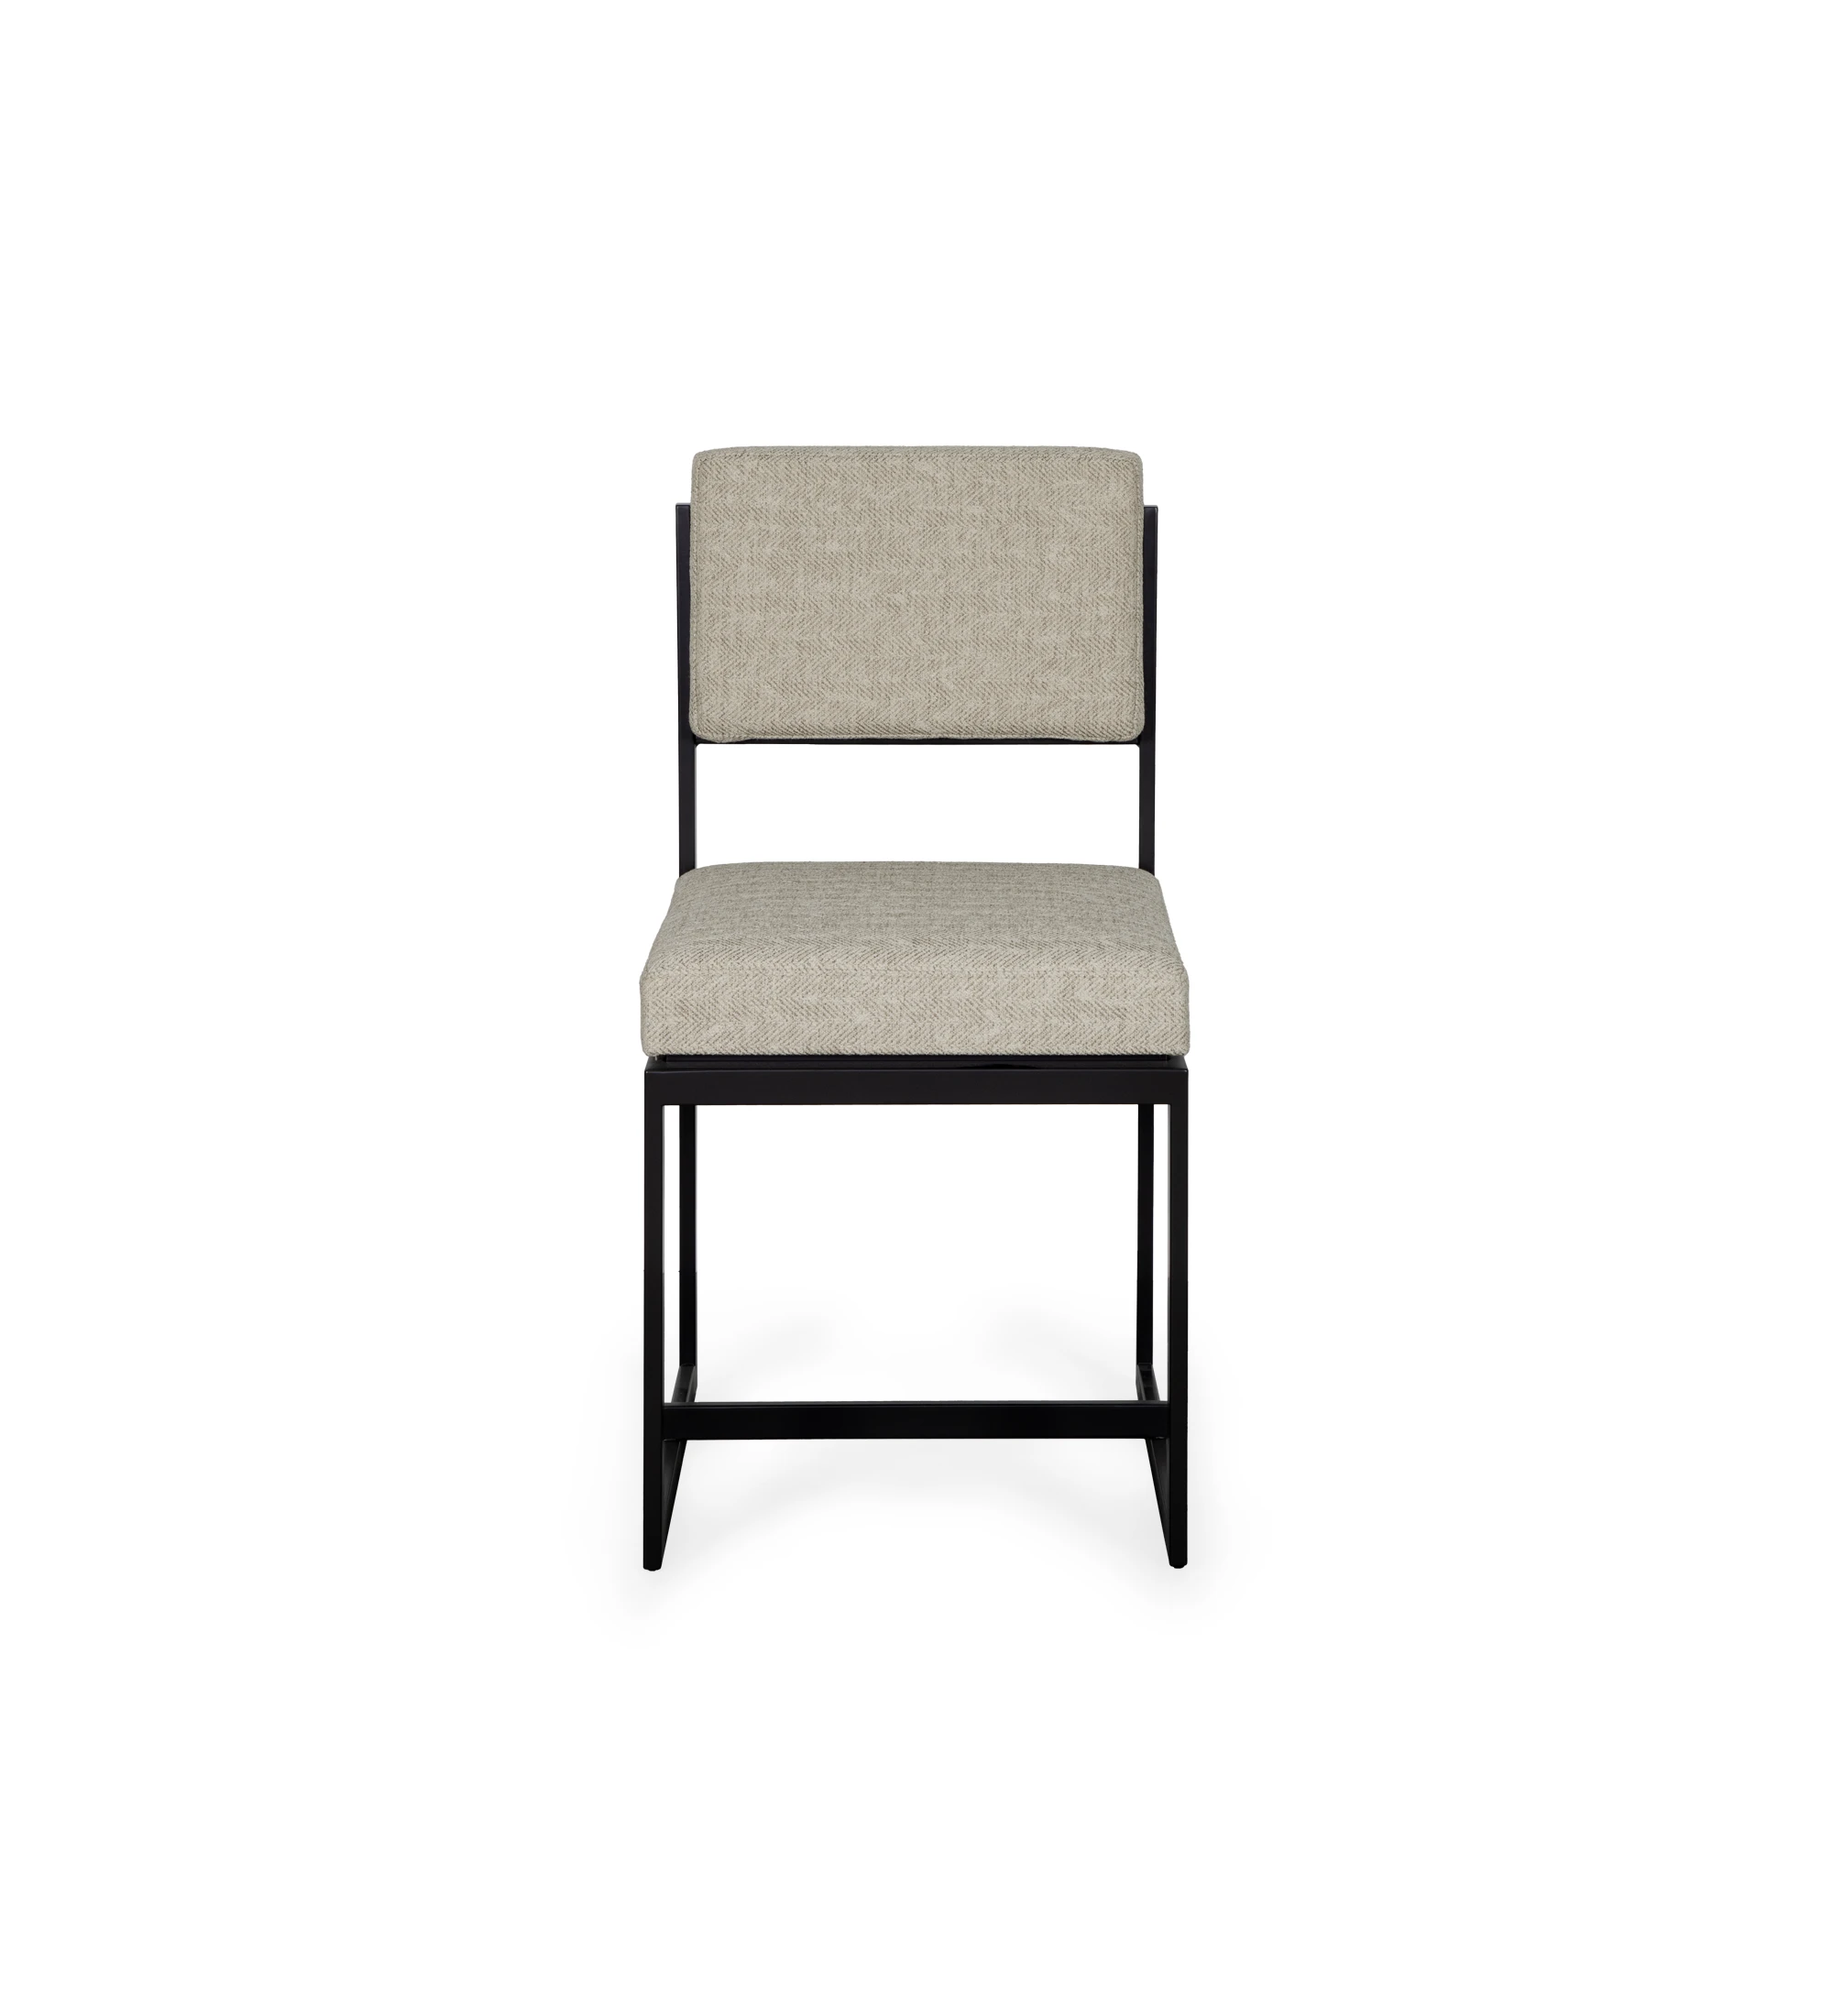 Cadeira com assento e encosto estofado a tecido, com estrutura metálica lacada a negro